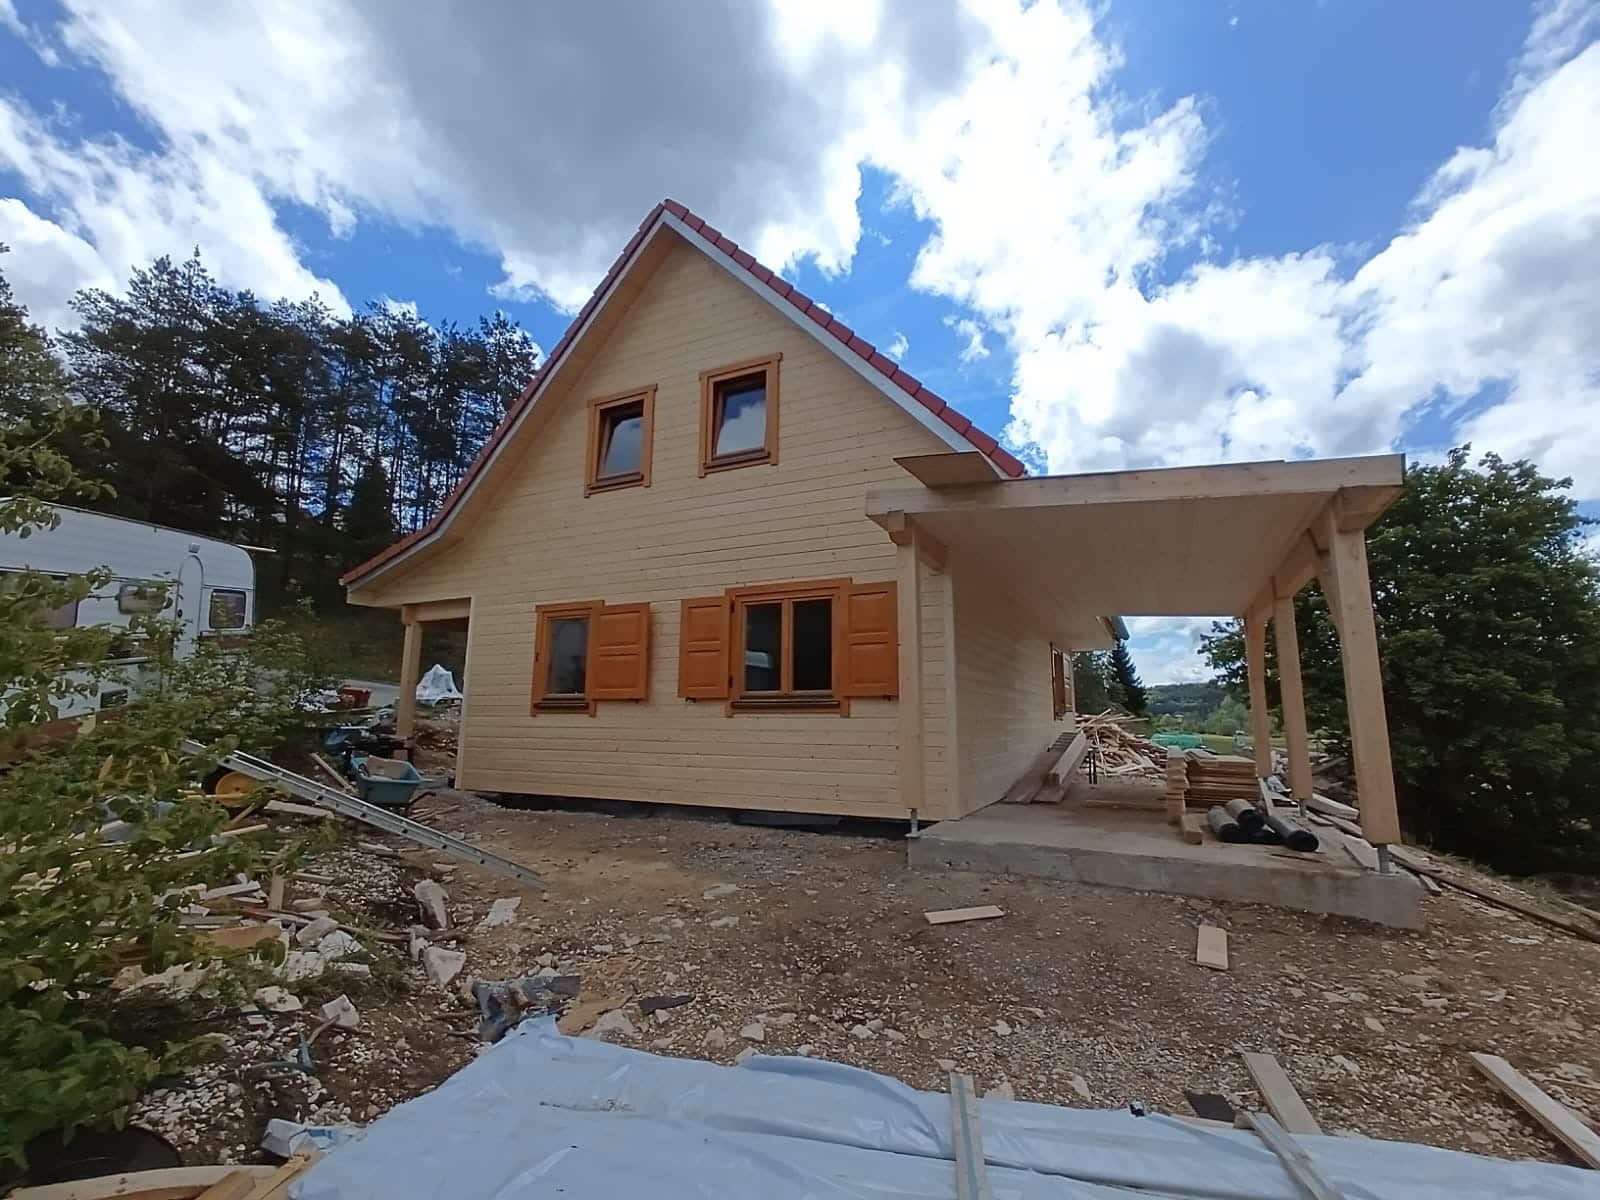 Een klein, gedeeltelijk afgebouwd houten huis met een schuin dak en rode dakspanen staat op een onverhard perceel. Het huis heeft twee ramen met bruine luiken op de bovenverdieping en twee ramen op de begane grond. Bouwmaterialen liggen verspreid over het terrein.